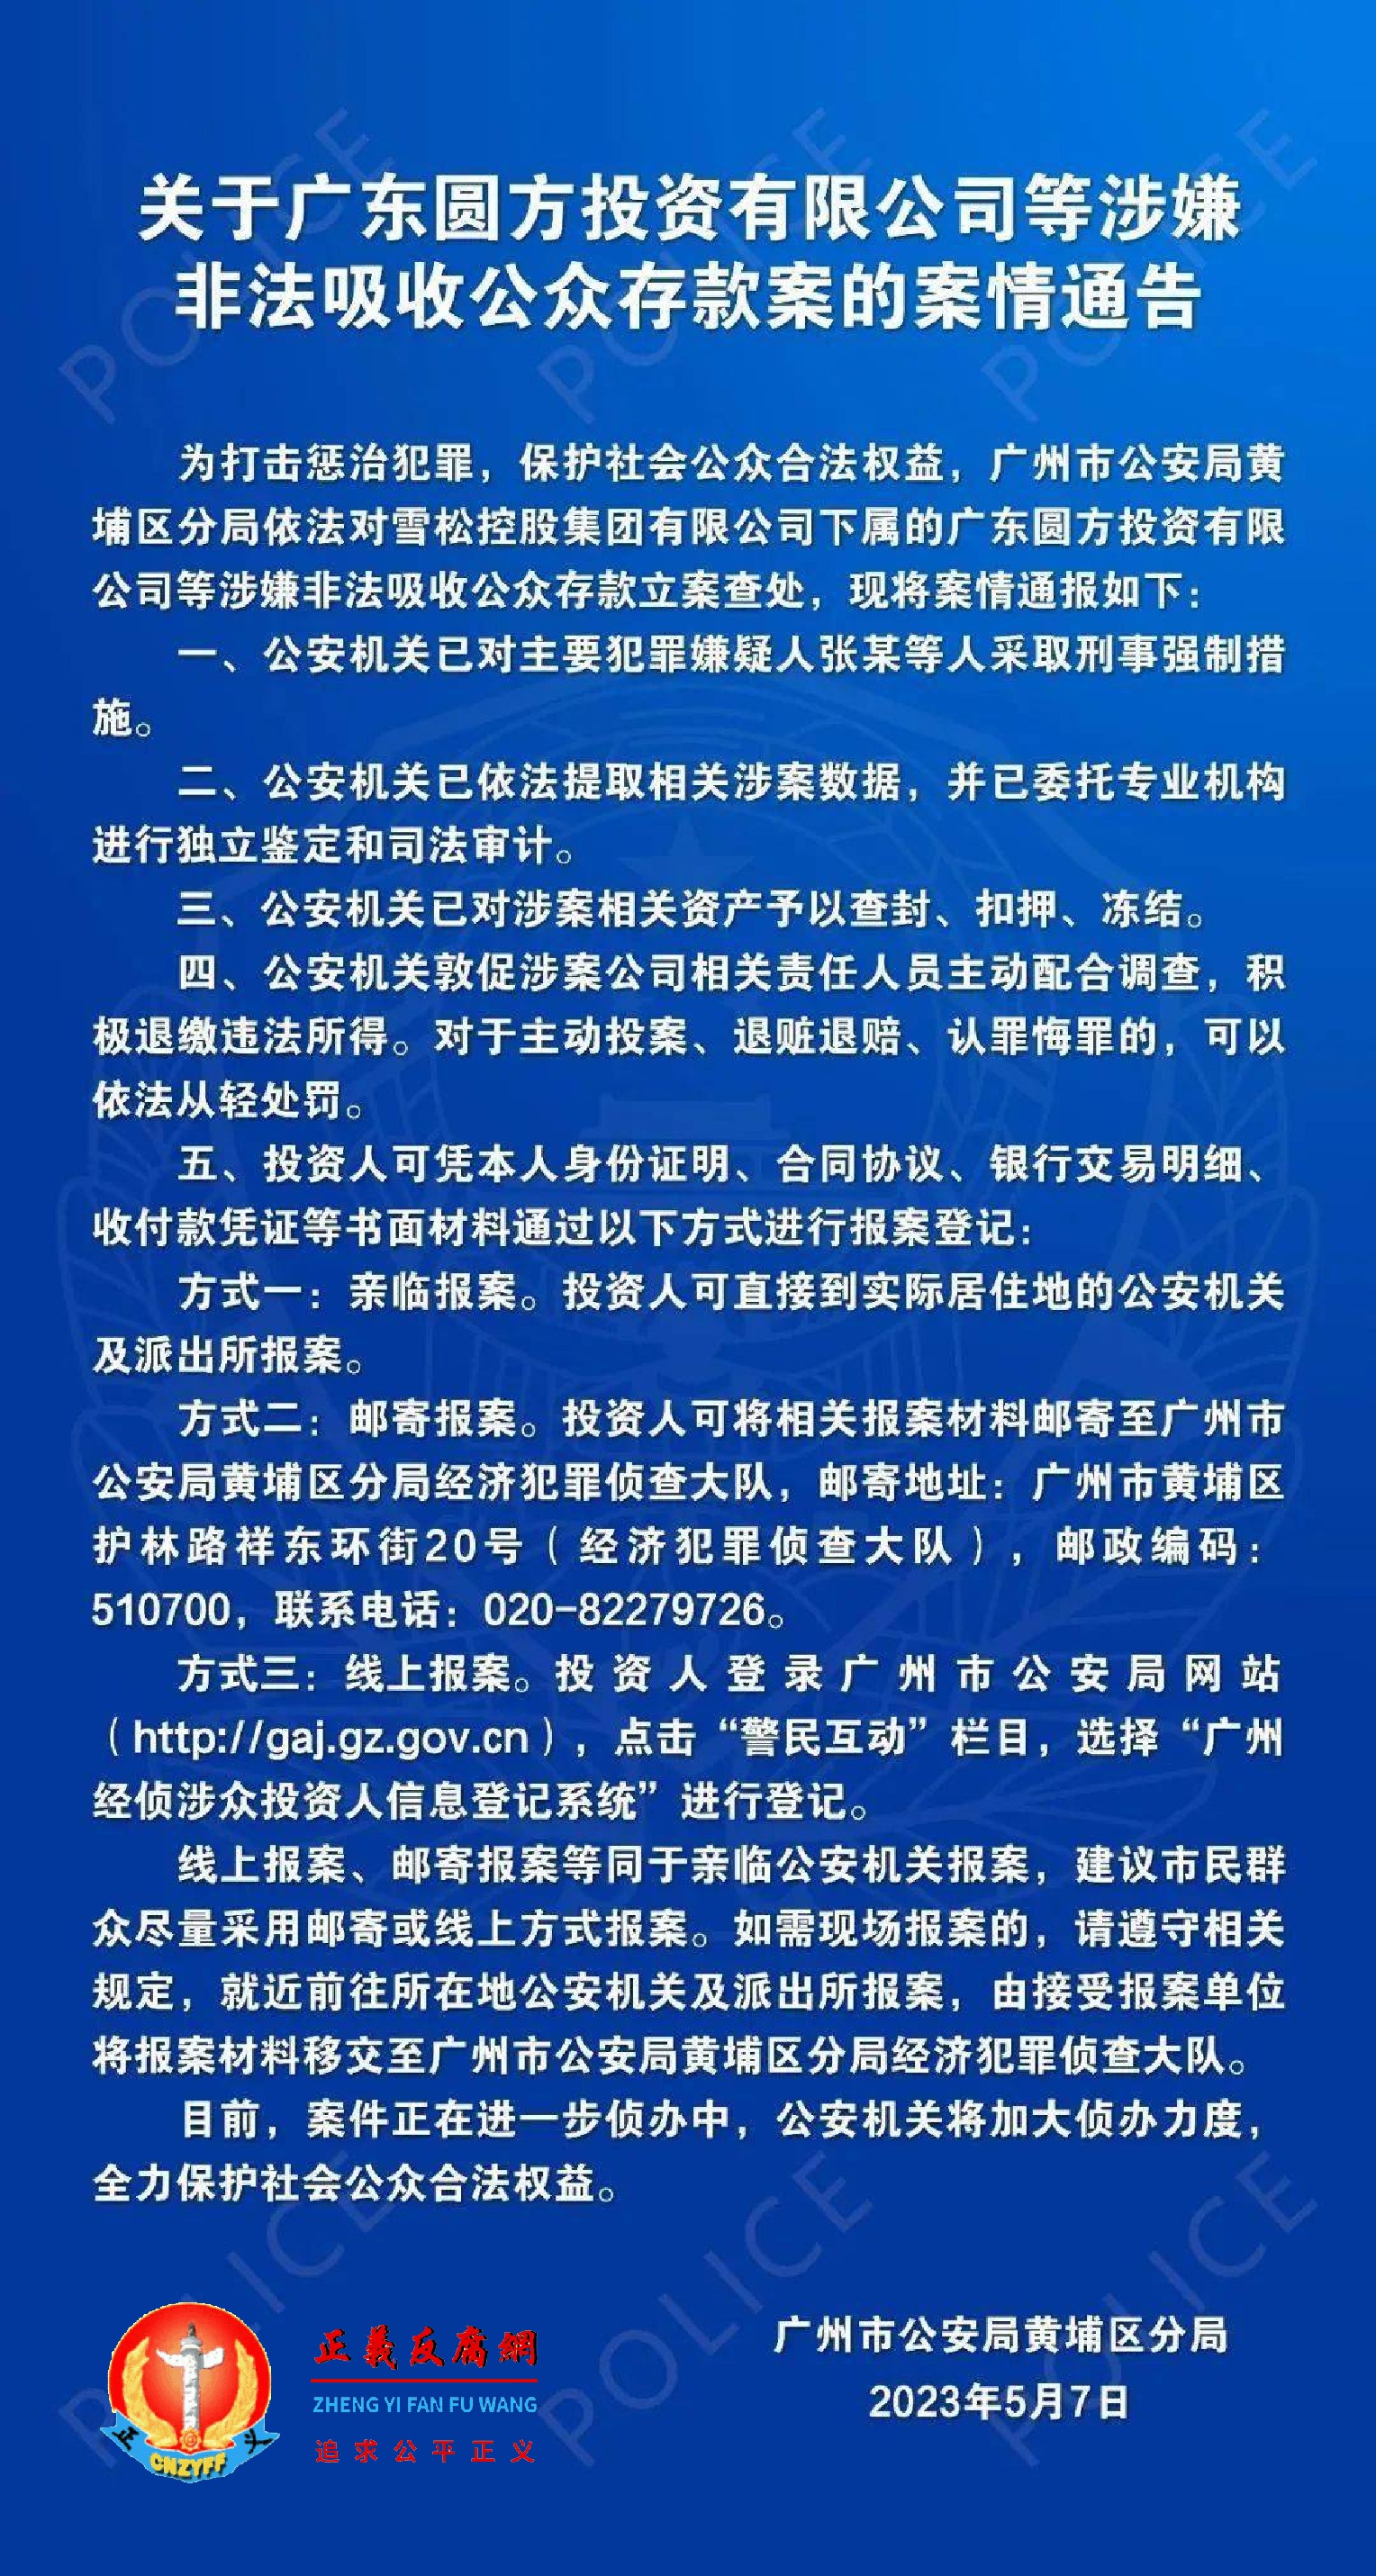 2023年5月7日，广州市公安局黄埔分局发布“关于广东圆方投资有限公司等涉嫌非法吸收公众存款案的案情通告”。.png